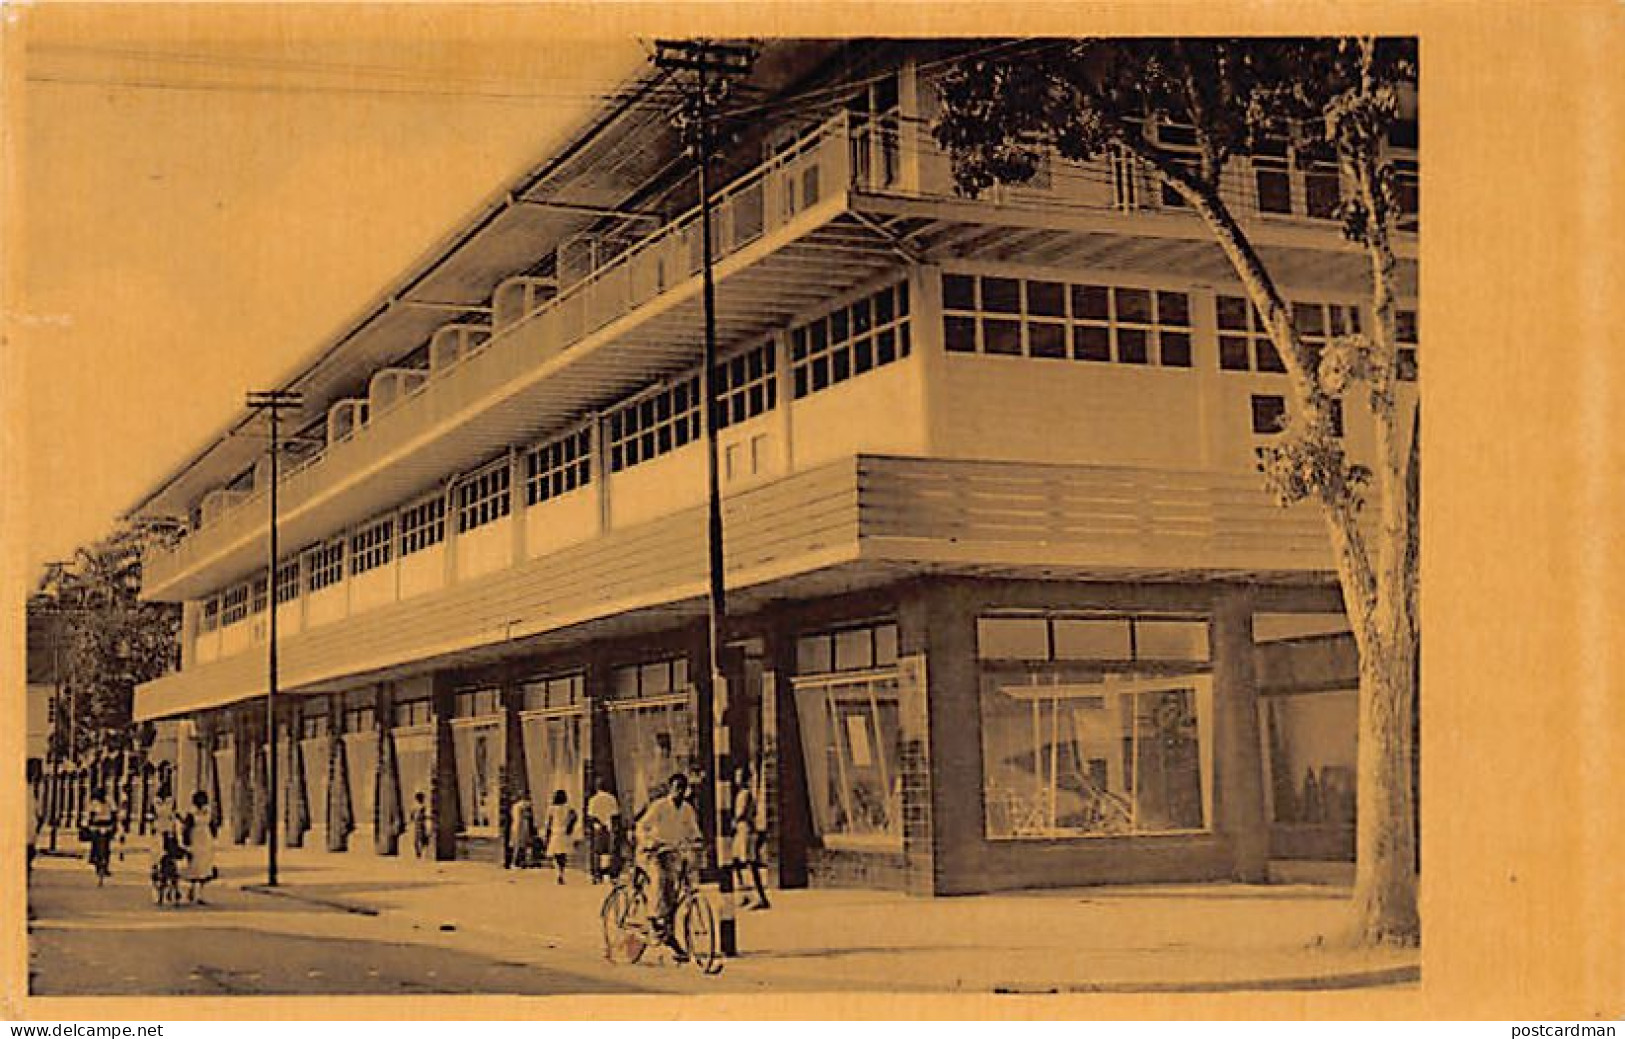 Suriname - PARAMARIBO - C. Kersten & Co. Store - Postcard Publisher - Publ. C. Kersten & Co.  - Suriname